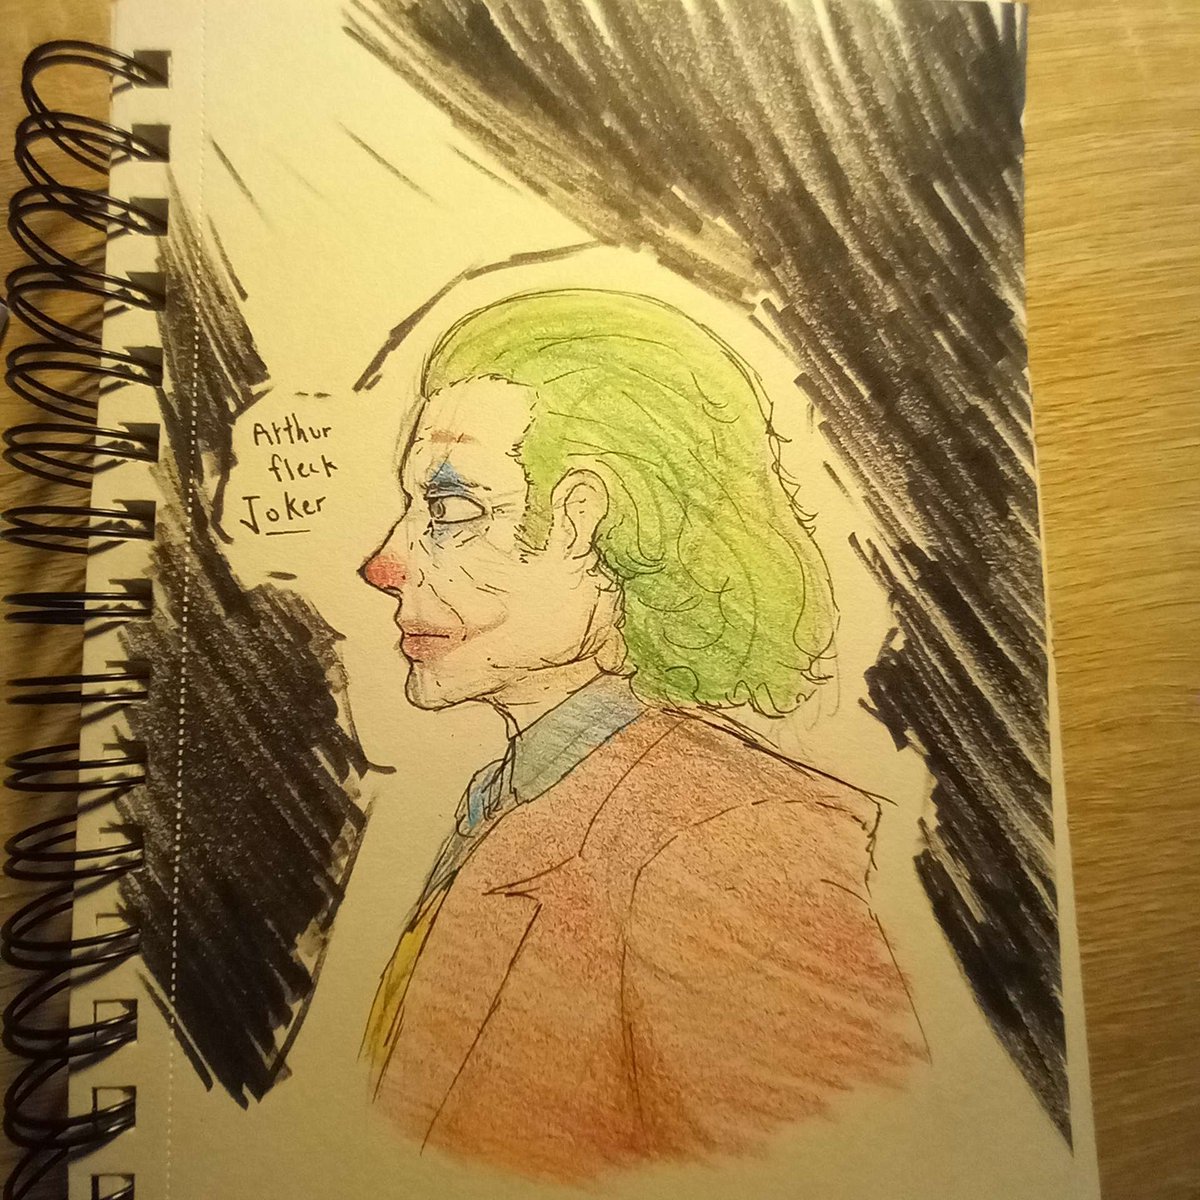 drew joker
#Joker #jokermovie #joker2 #arthurfleck #jokerfanart